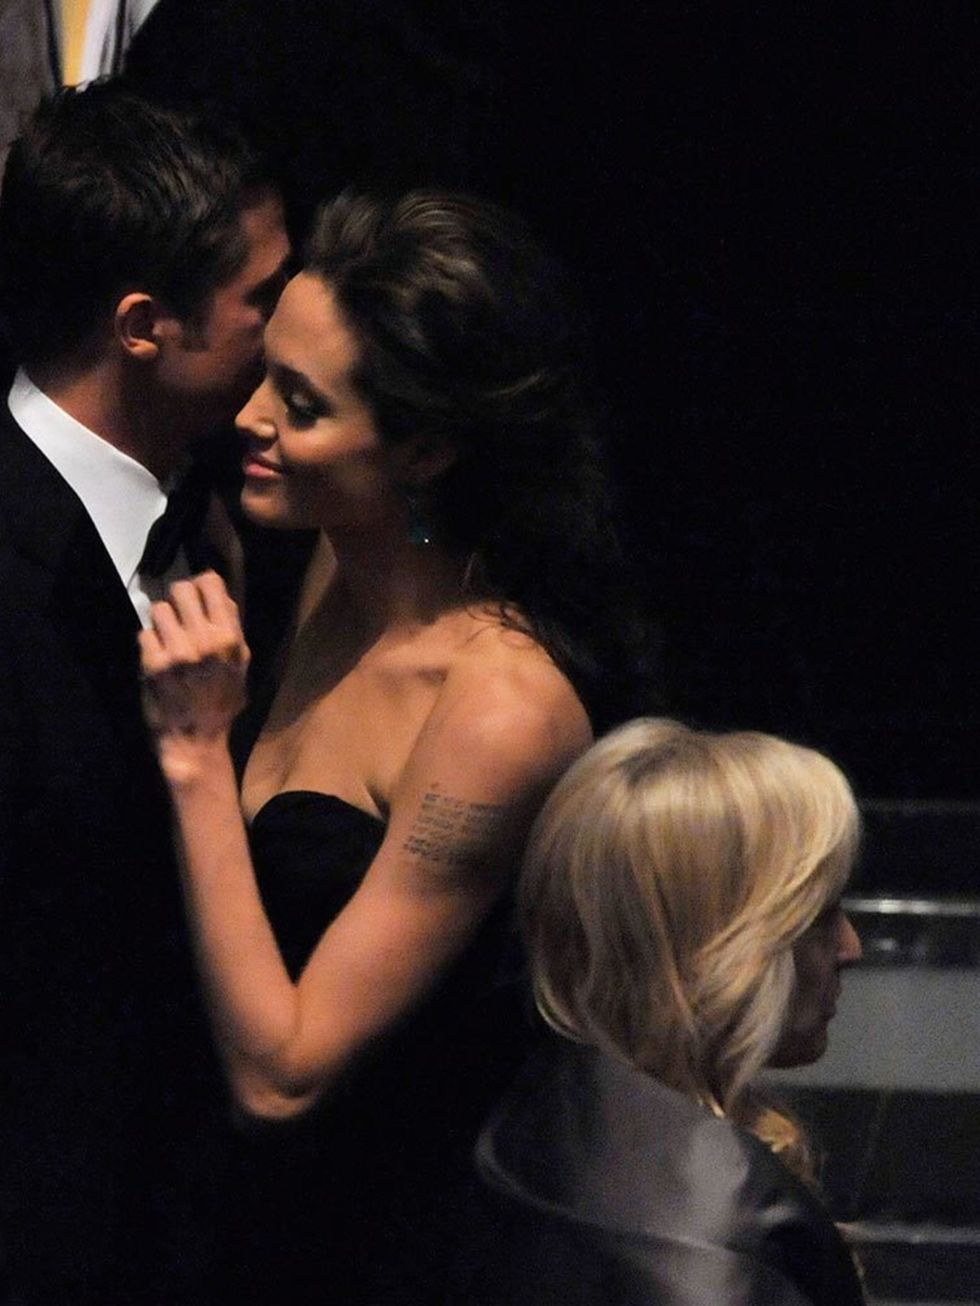 Brad Pitt and Angelina Jolie at the 2009 Oscars